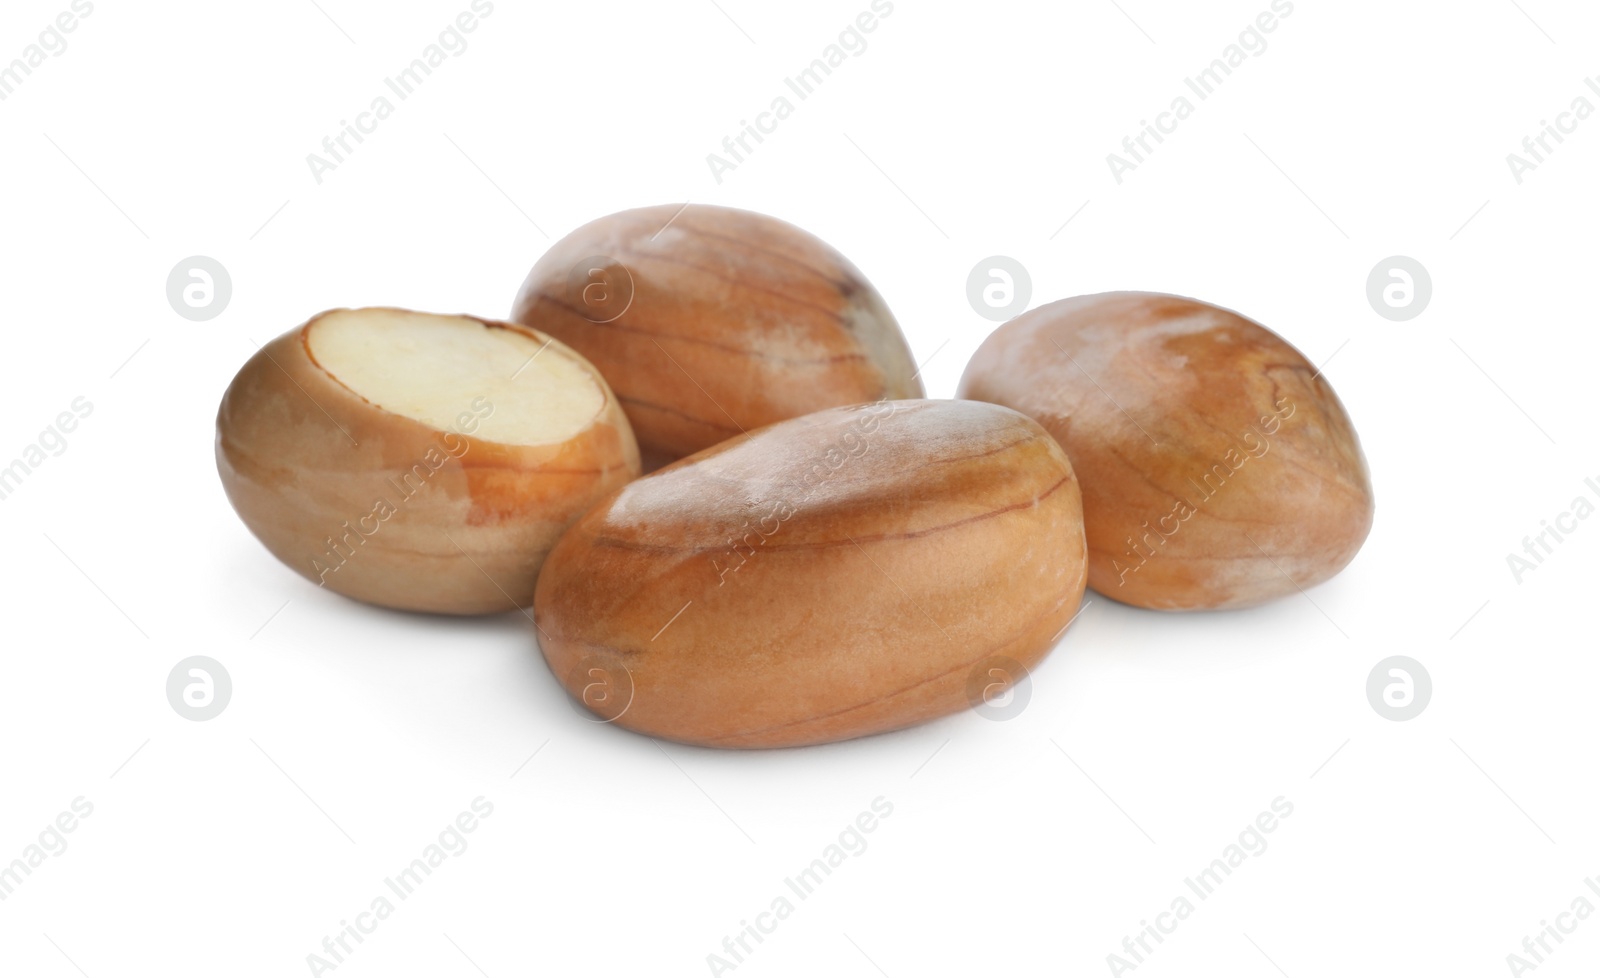 Photo of Fresh raw jackfruit seeds on white background